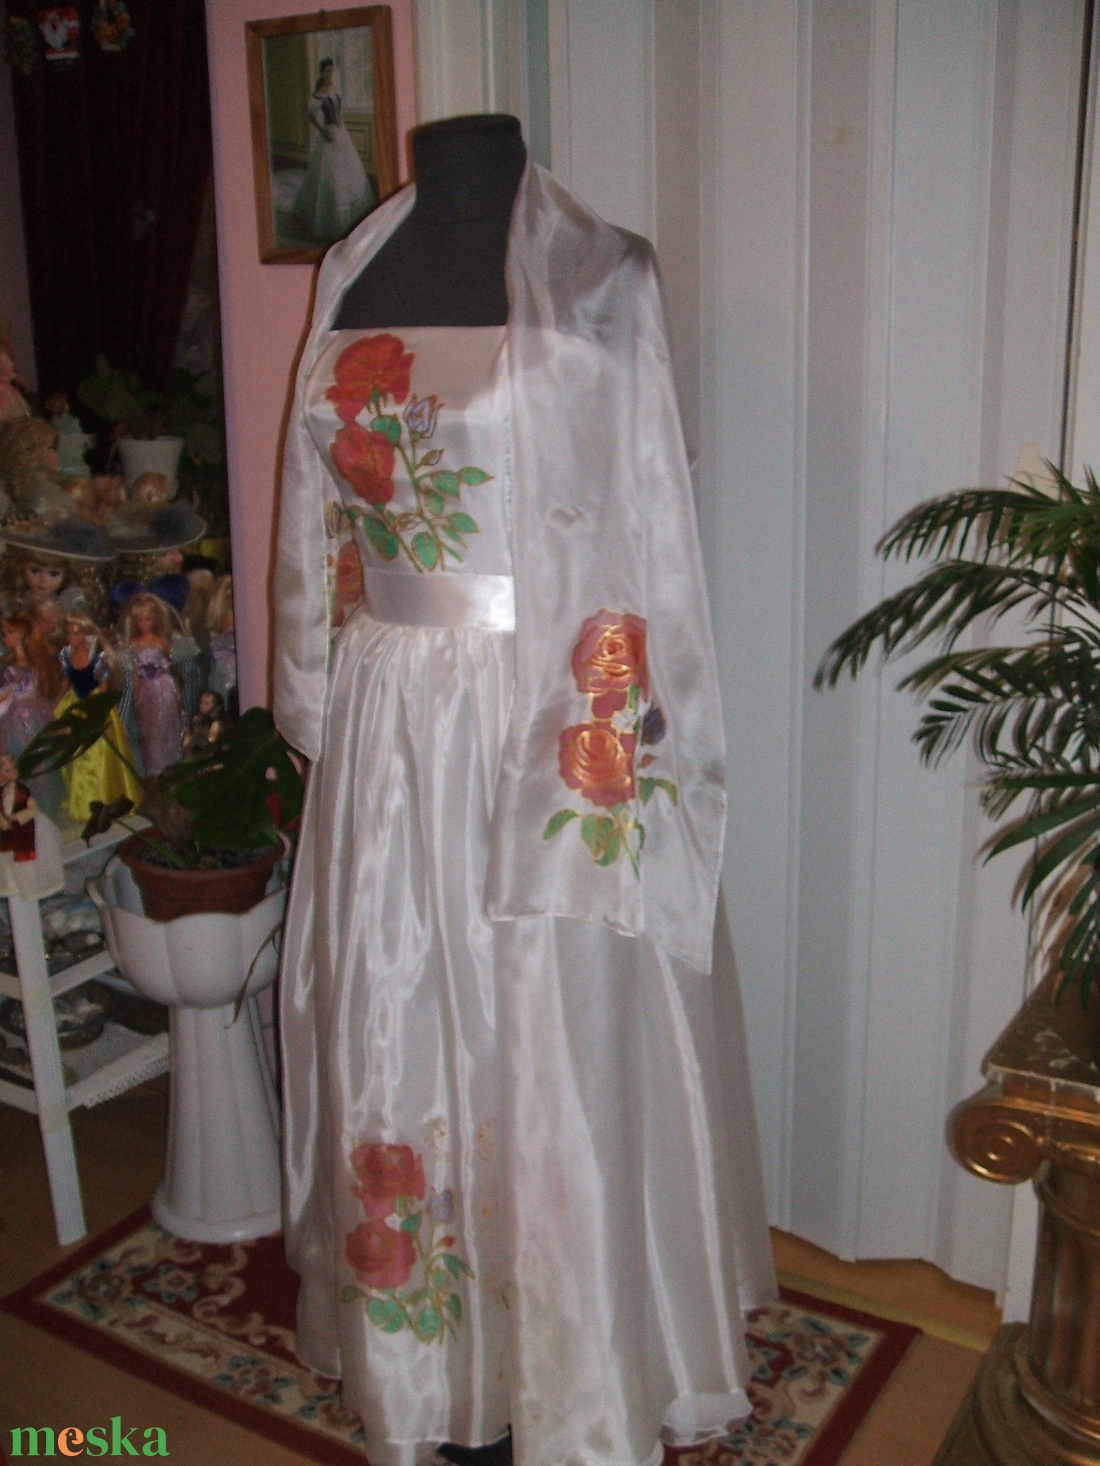 Menyasszonyi, alkalmi ruha hernyóselyem anyagra festve. - esküvő - ruha - menyasszonyi ruha - Meska.hu